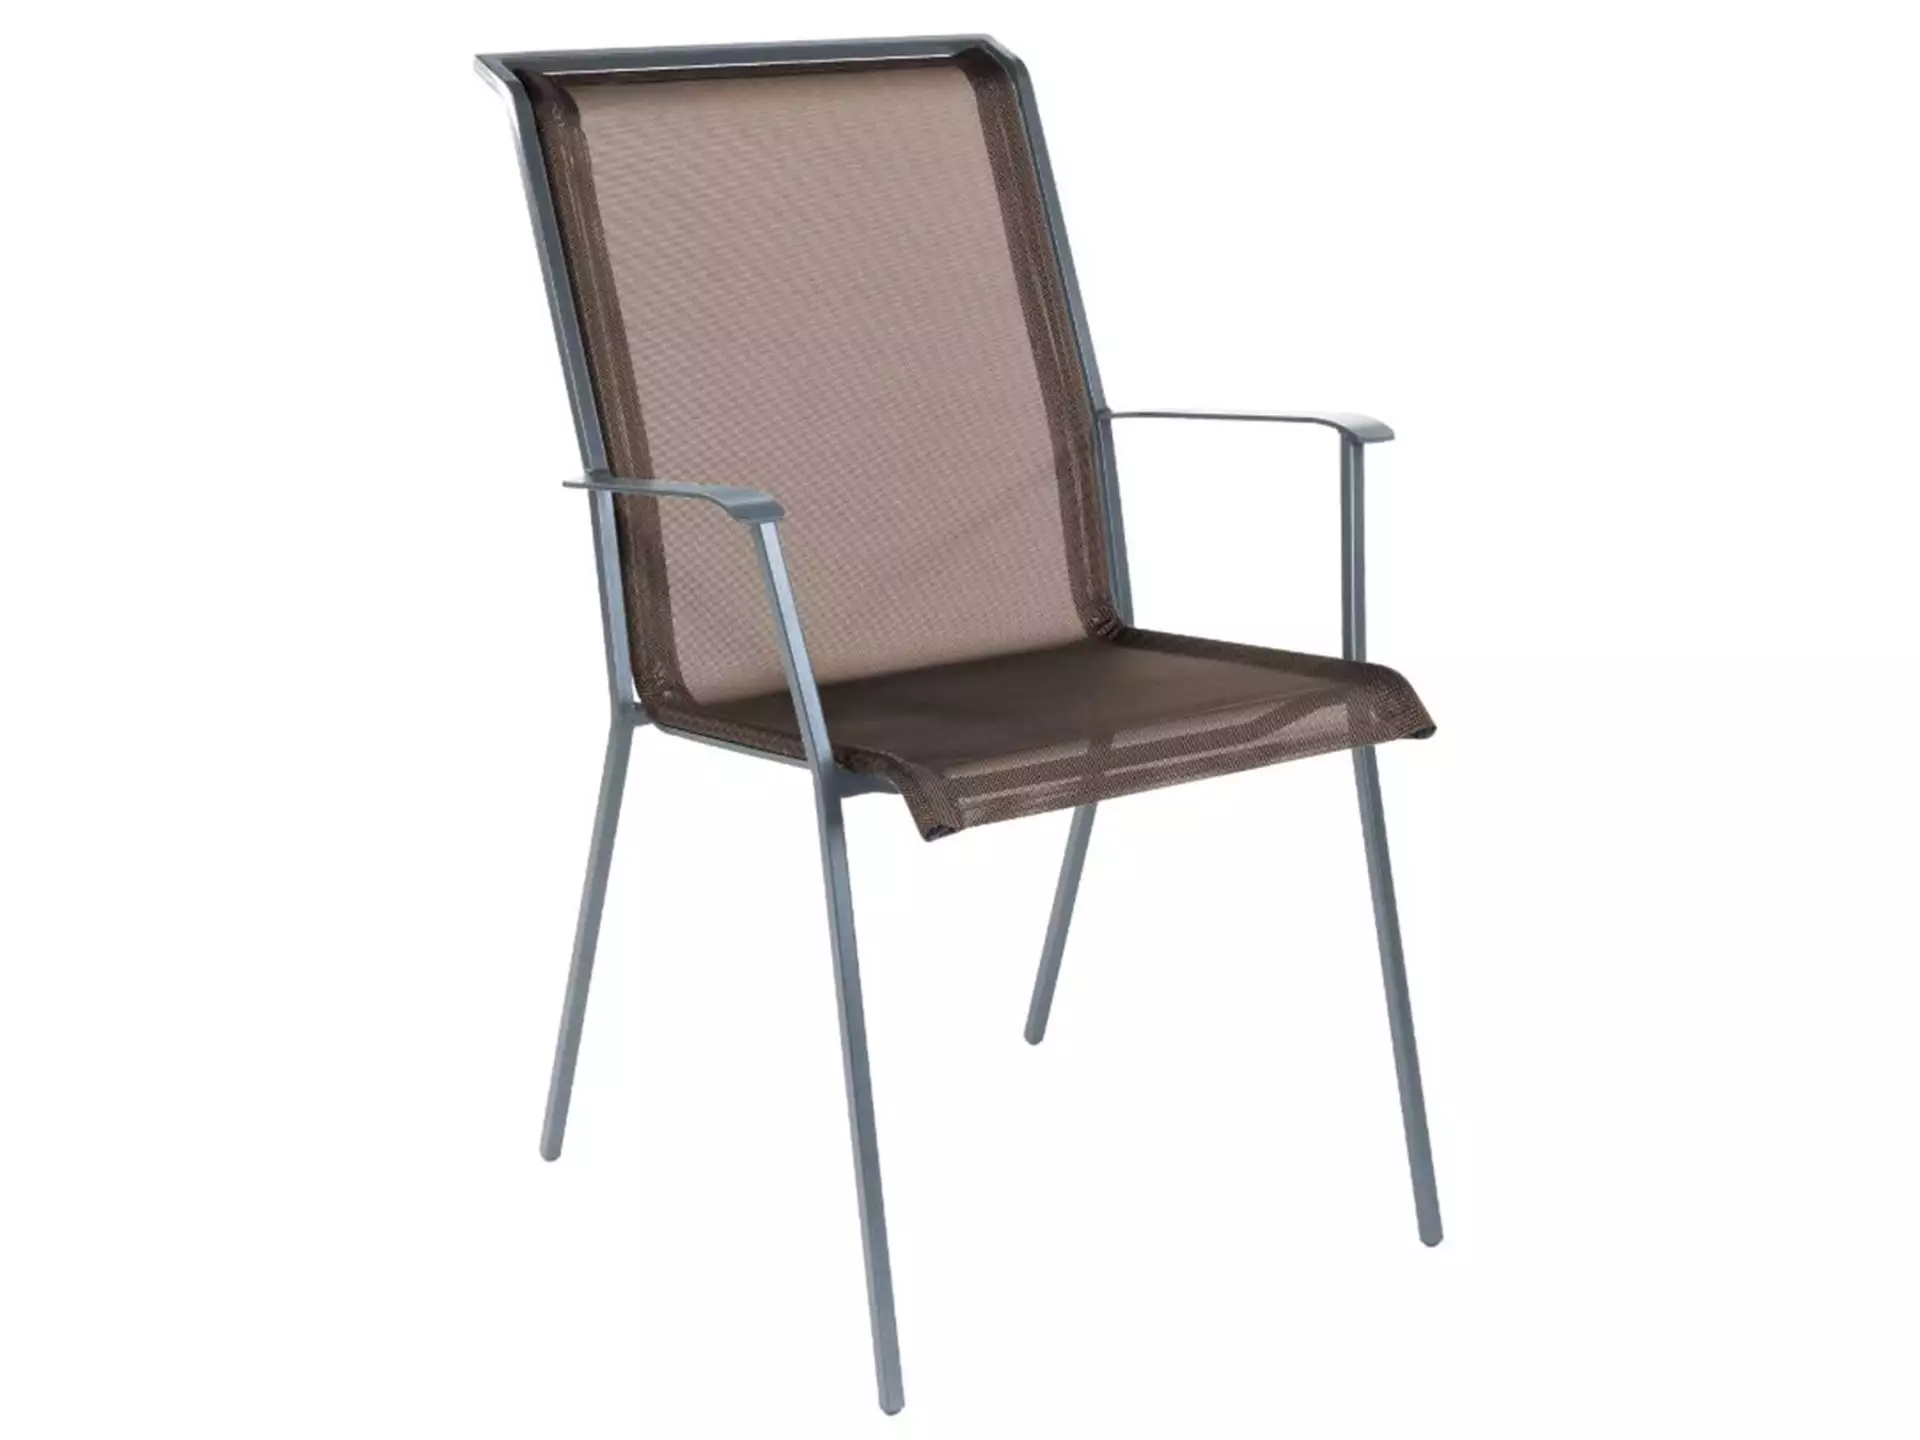 Matten-Sessel Chur Schaffner / Farbe: Braun